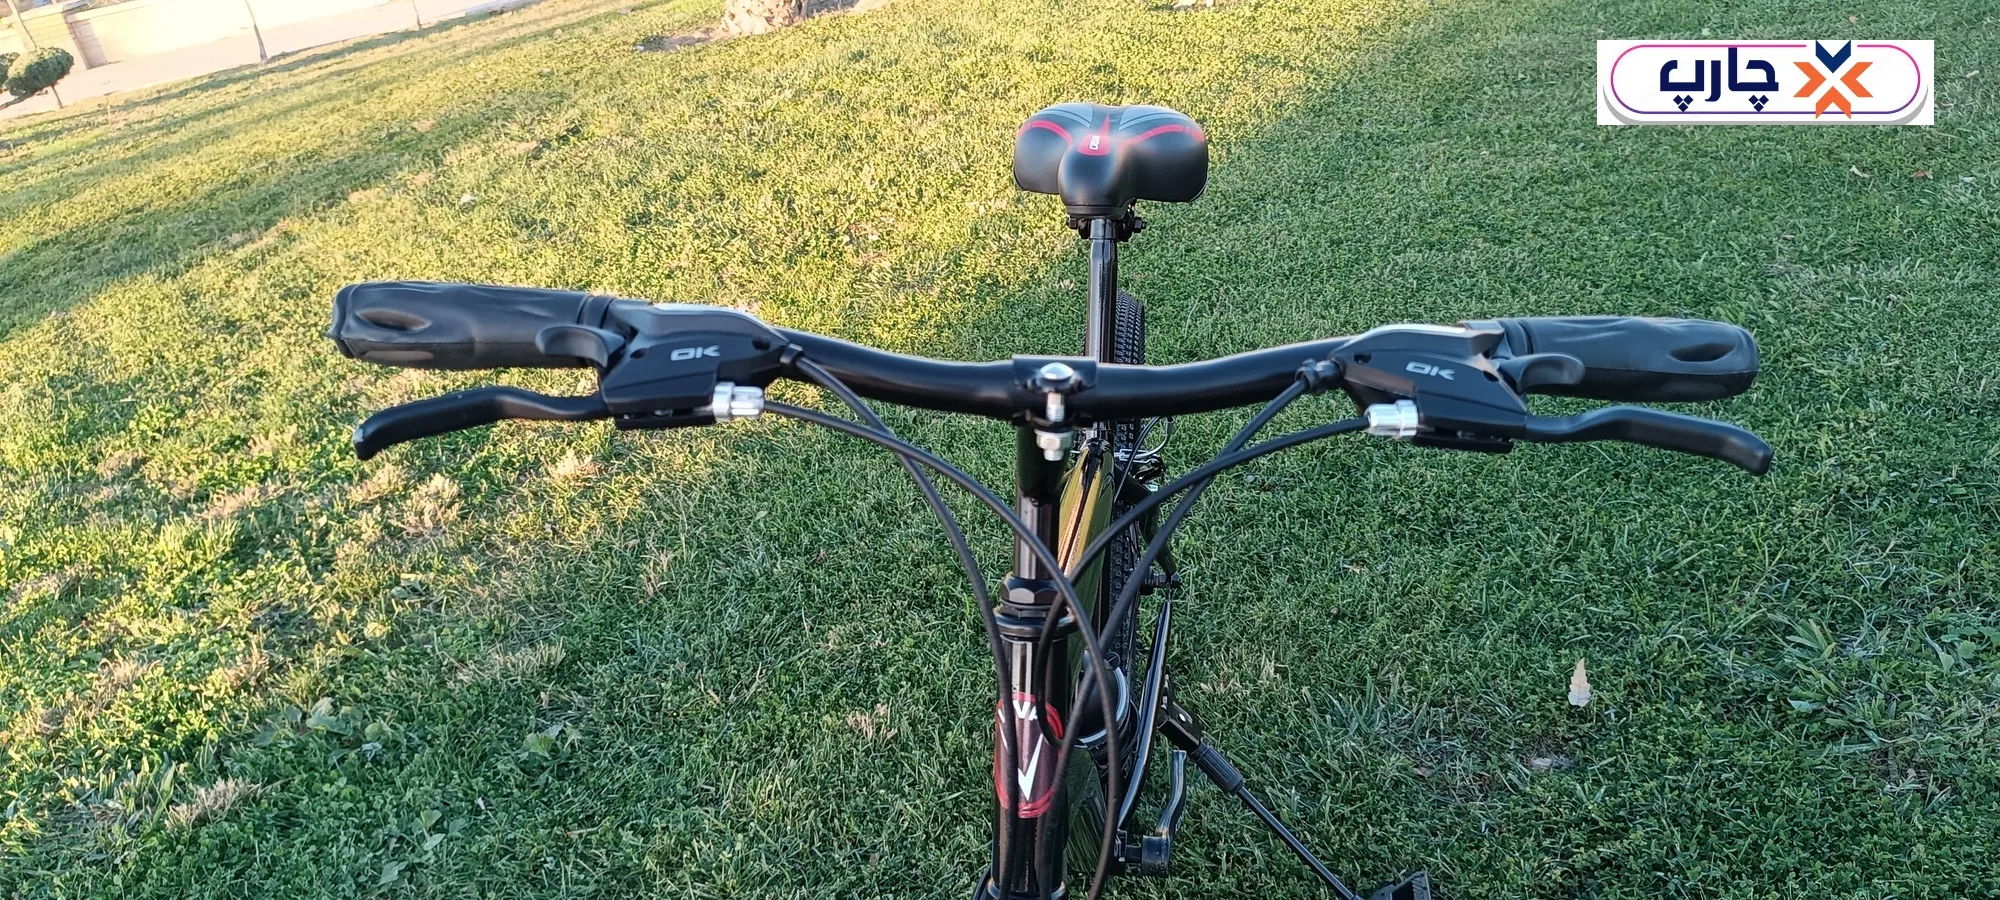 فرمان دانهیل استفاده از دسته دنده 21 سرعته کلاج دار در دوچرخه سایز 26 دنده کلاجدار طرح المپیا رنگ مشکی قرمز